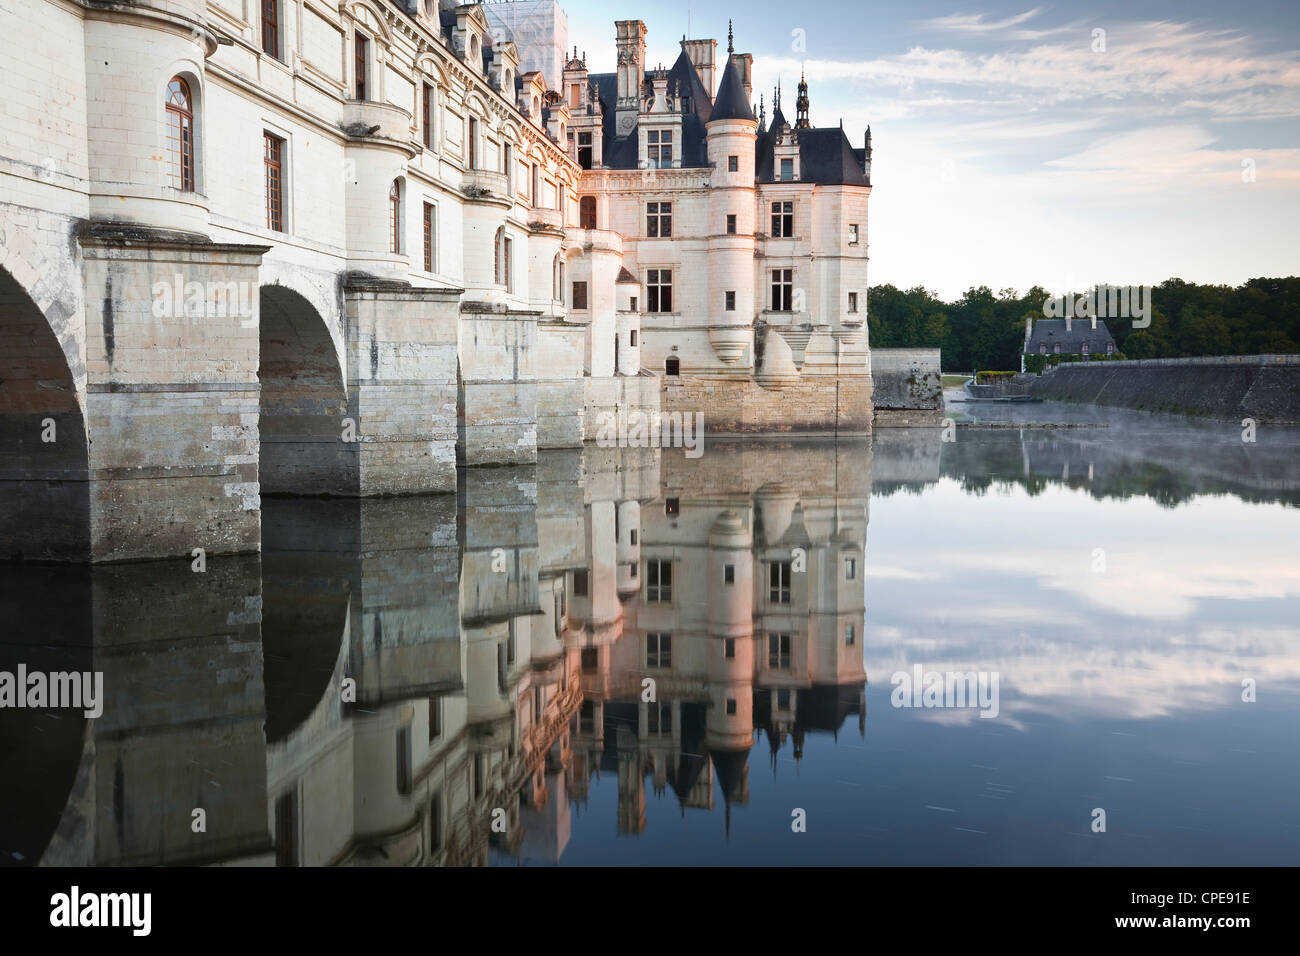 Le château de Chenonceau se reflétant dans les eaux de la rivière du Cher, Indre-et-Loire, Loire, Centre, France, Europe Banque D'Images